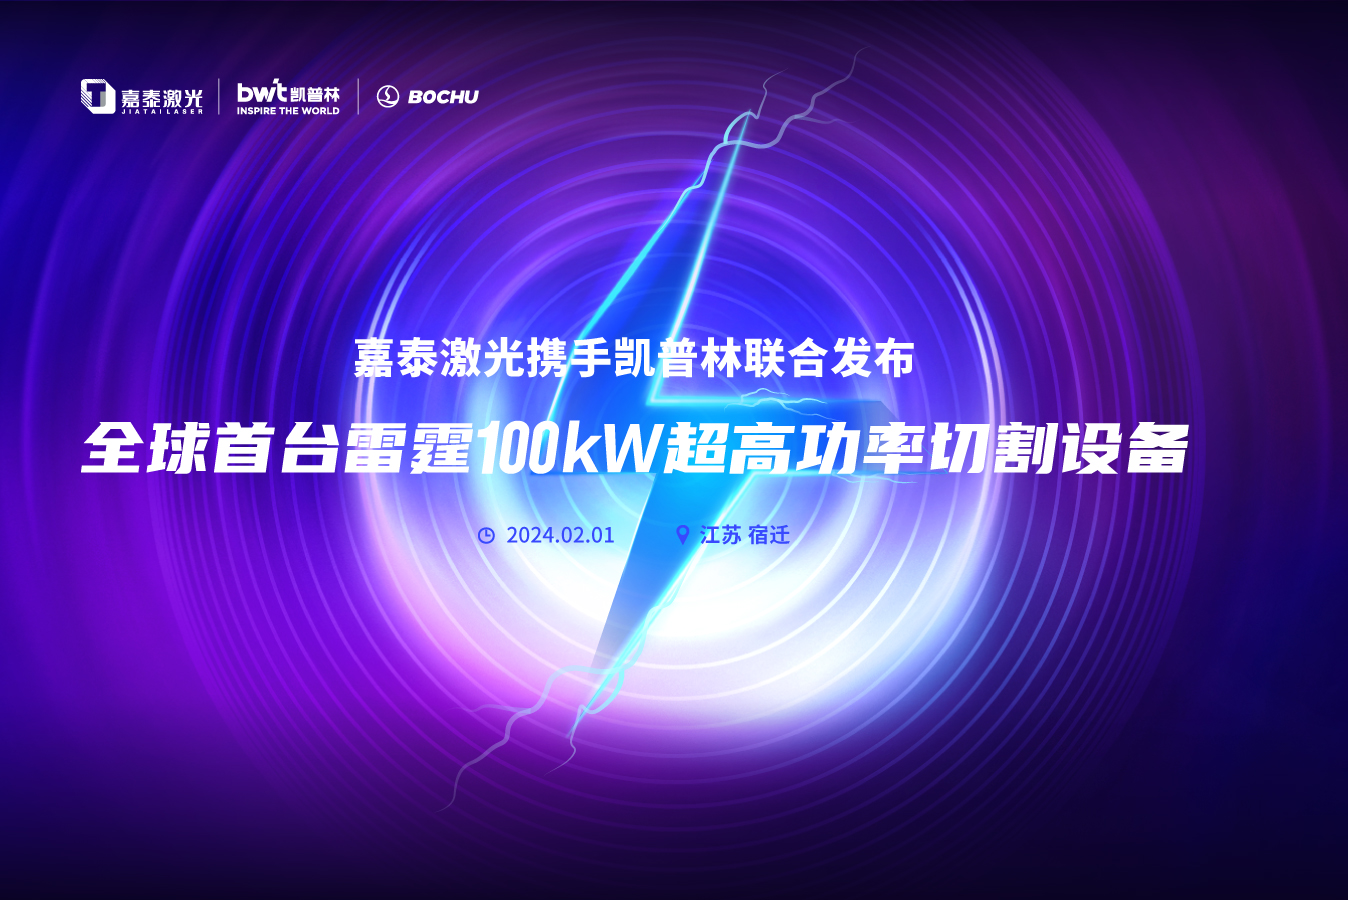 嘉泰激光携手凯普林、柏楚电子发布全球首台100kw激光切割机